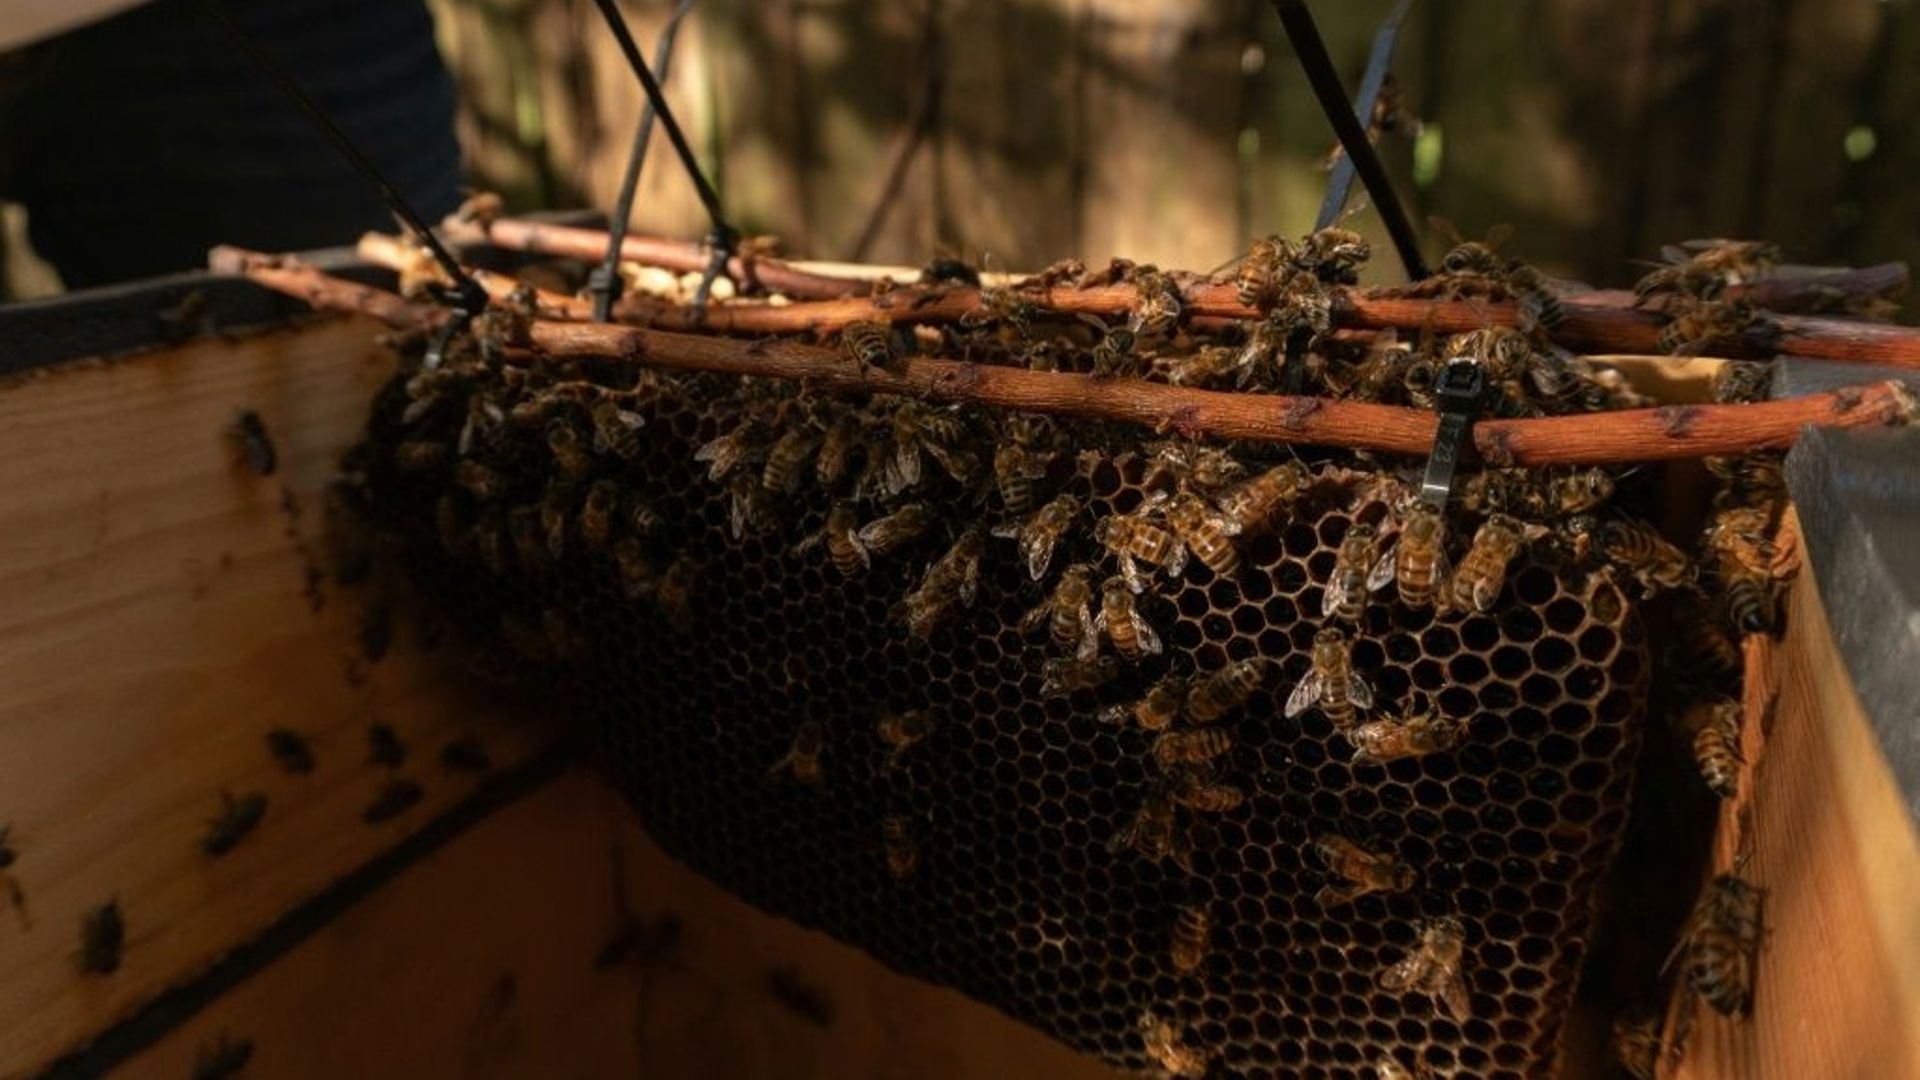 A Miami, une militante vient en aide aux abeilles menacées d'extermination.